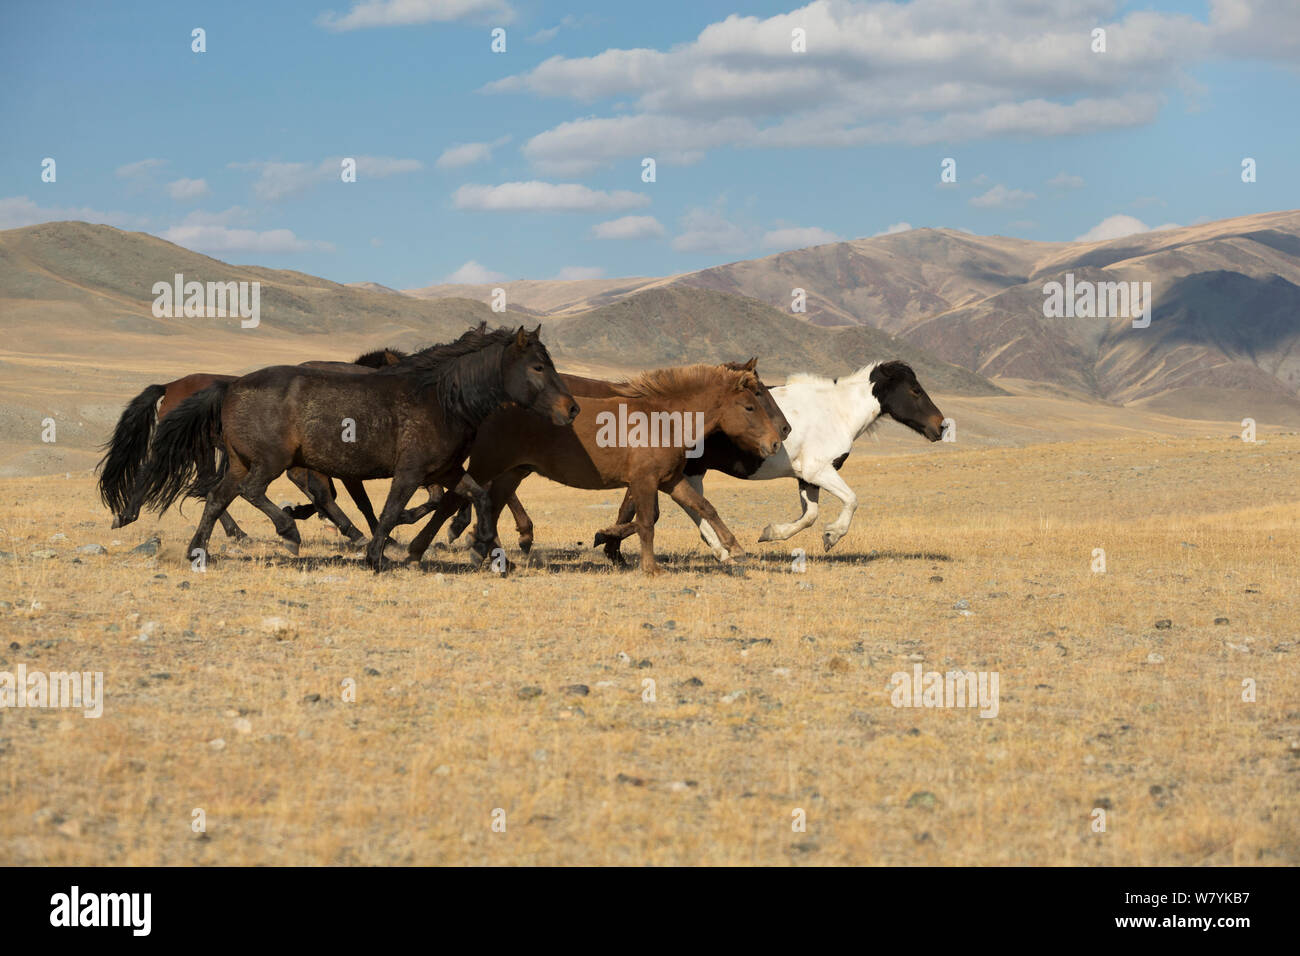 Bande de chevaux sauvages des plaines Mongoles d'exécution sur au pied d'Dungurukh Uul Mountain, près de la frontière avec la Chine et le Kazakhstan, la Mongolie, aymag Bayan-Olgiy. Septembre. Banque D'Images